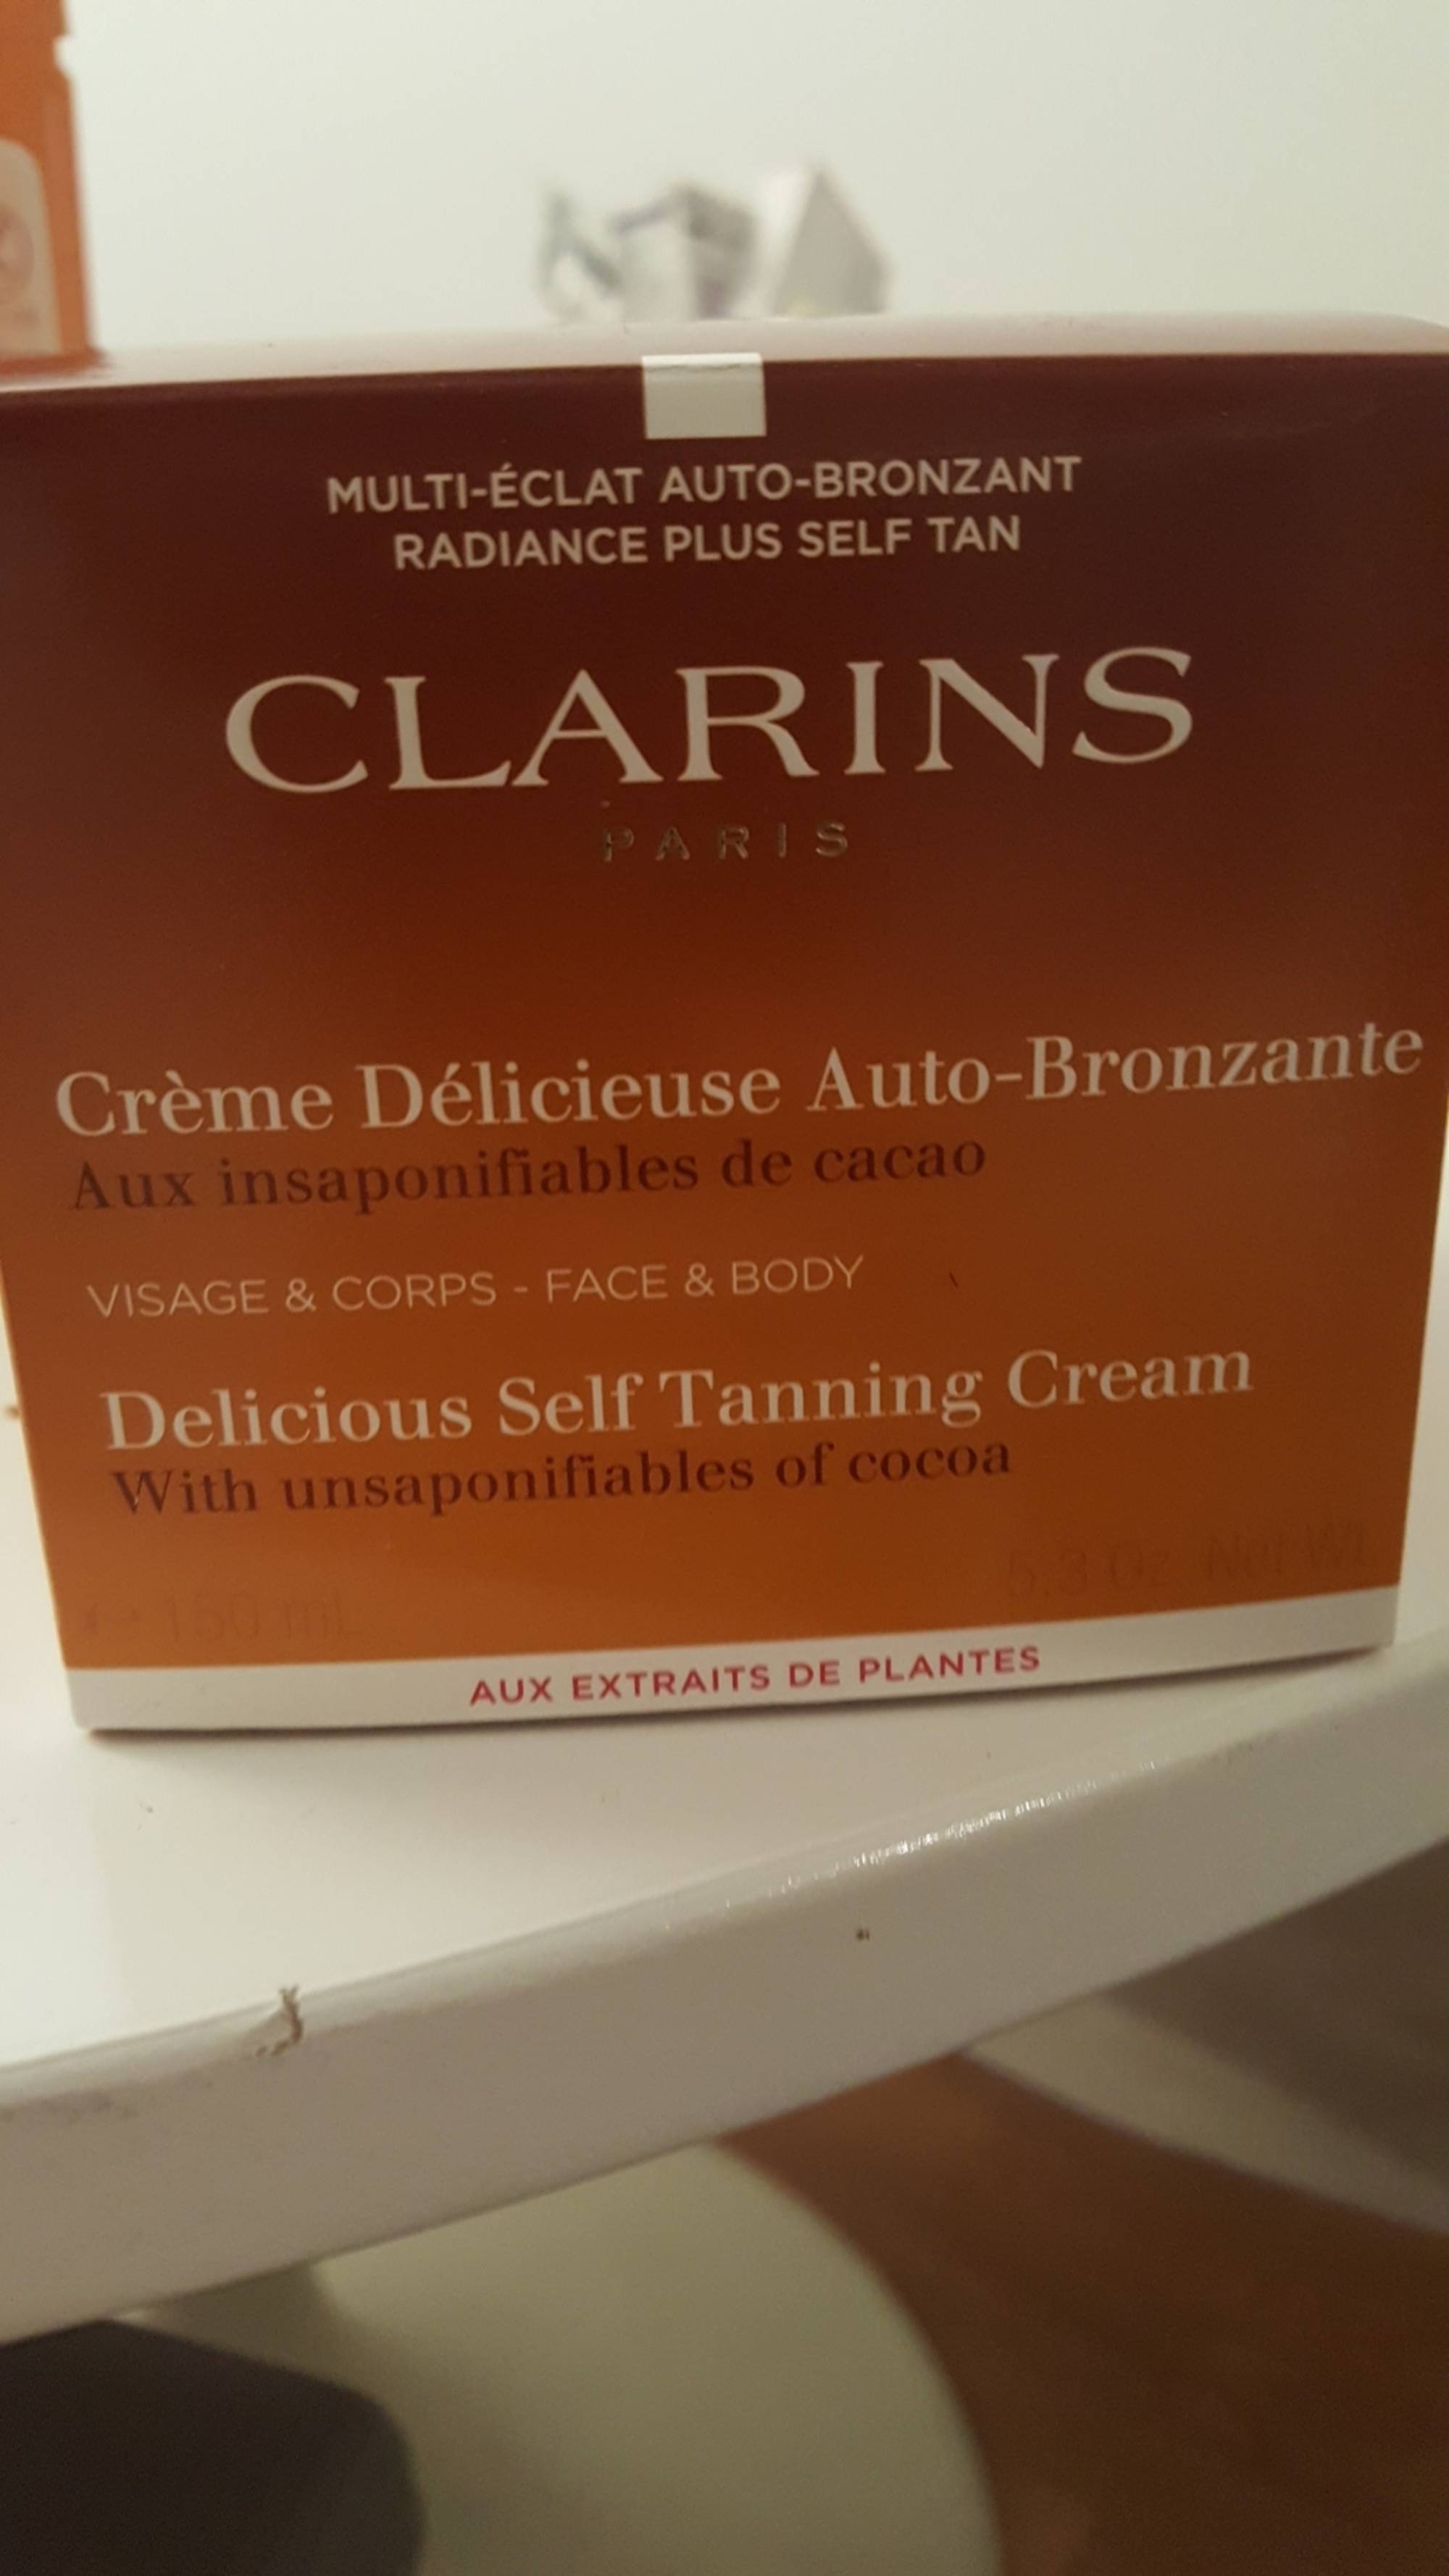 CLARINS - Crème délicieuse auto-bronzante aux insaponifiables de cacao